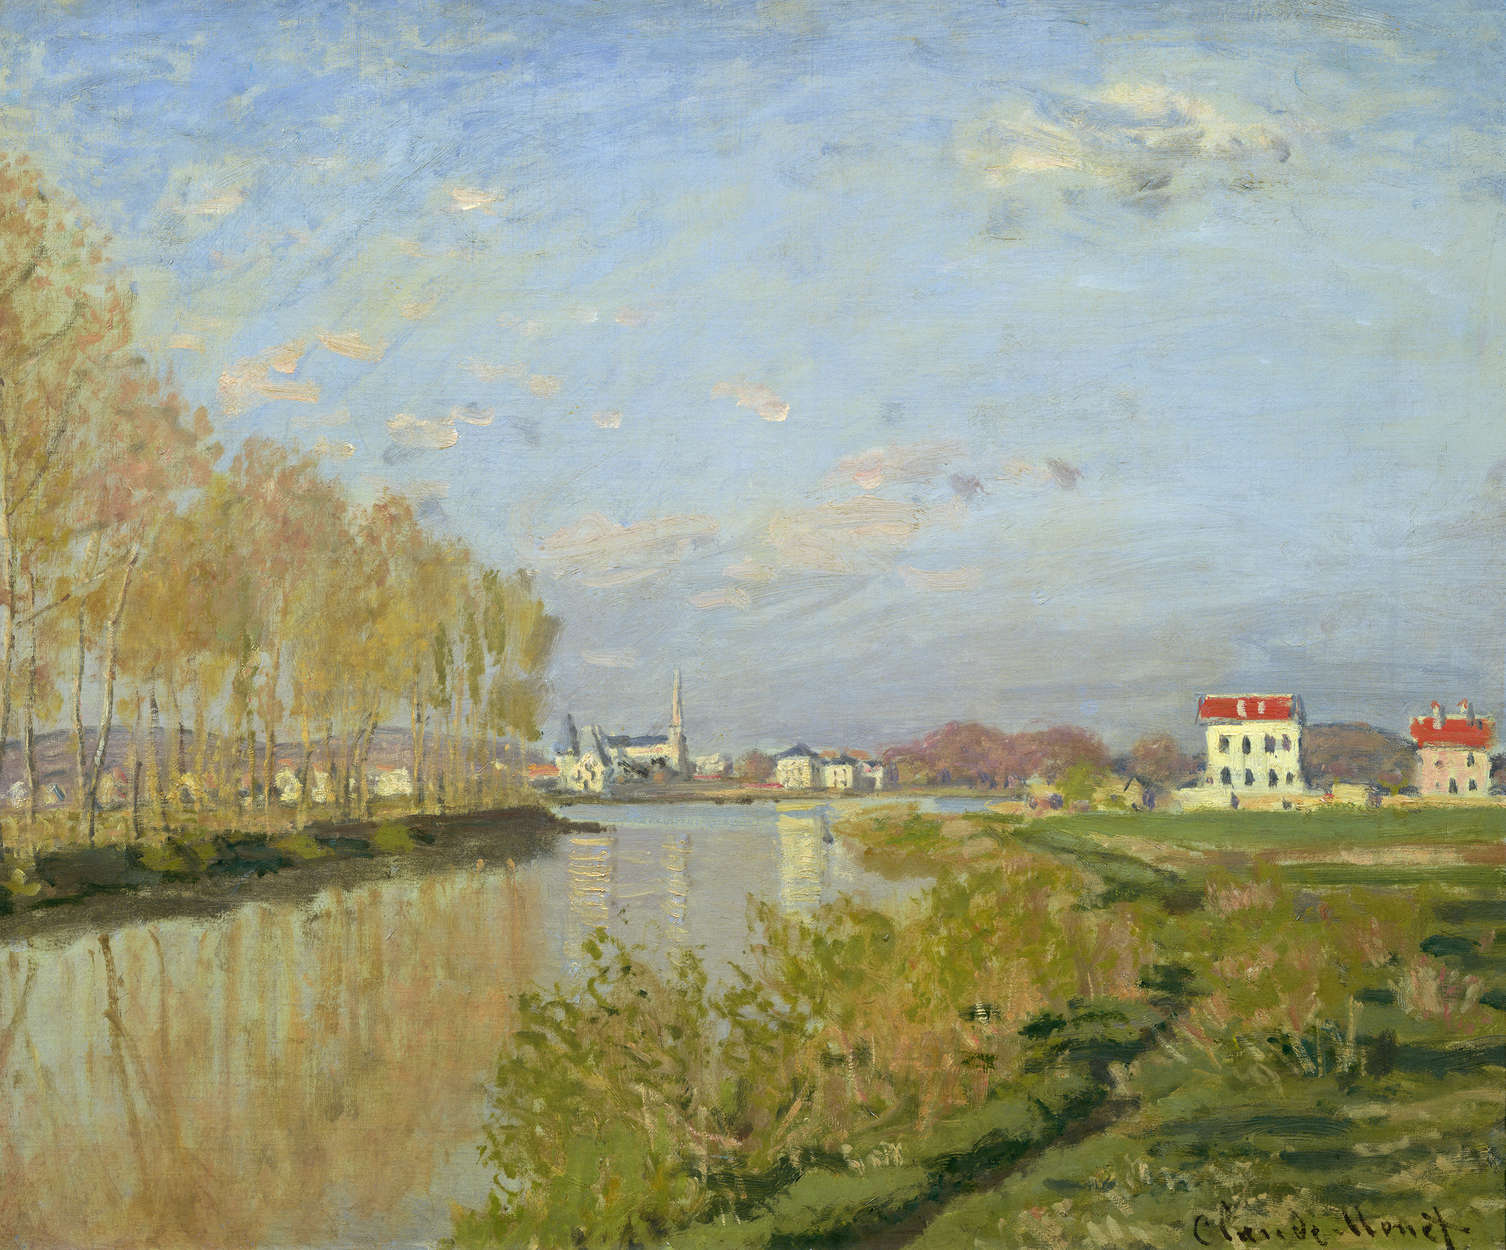             Fototapete "Die Seine in Argenteuil" von Claude Monet
        